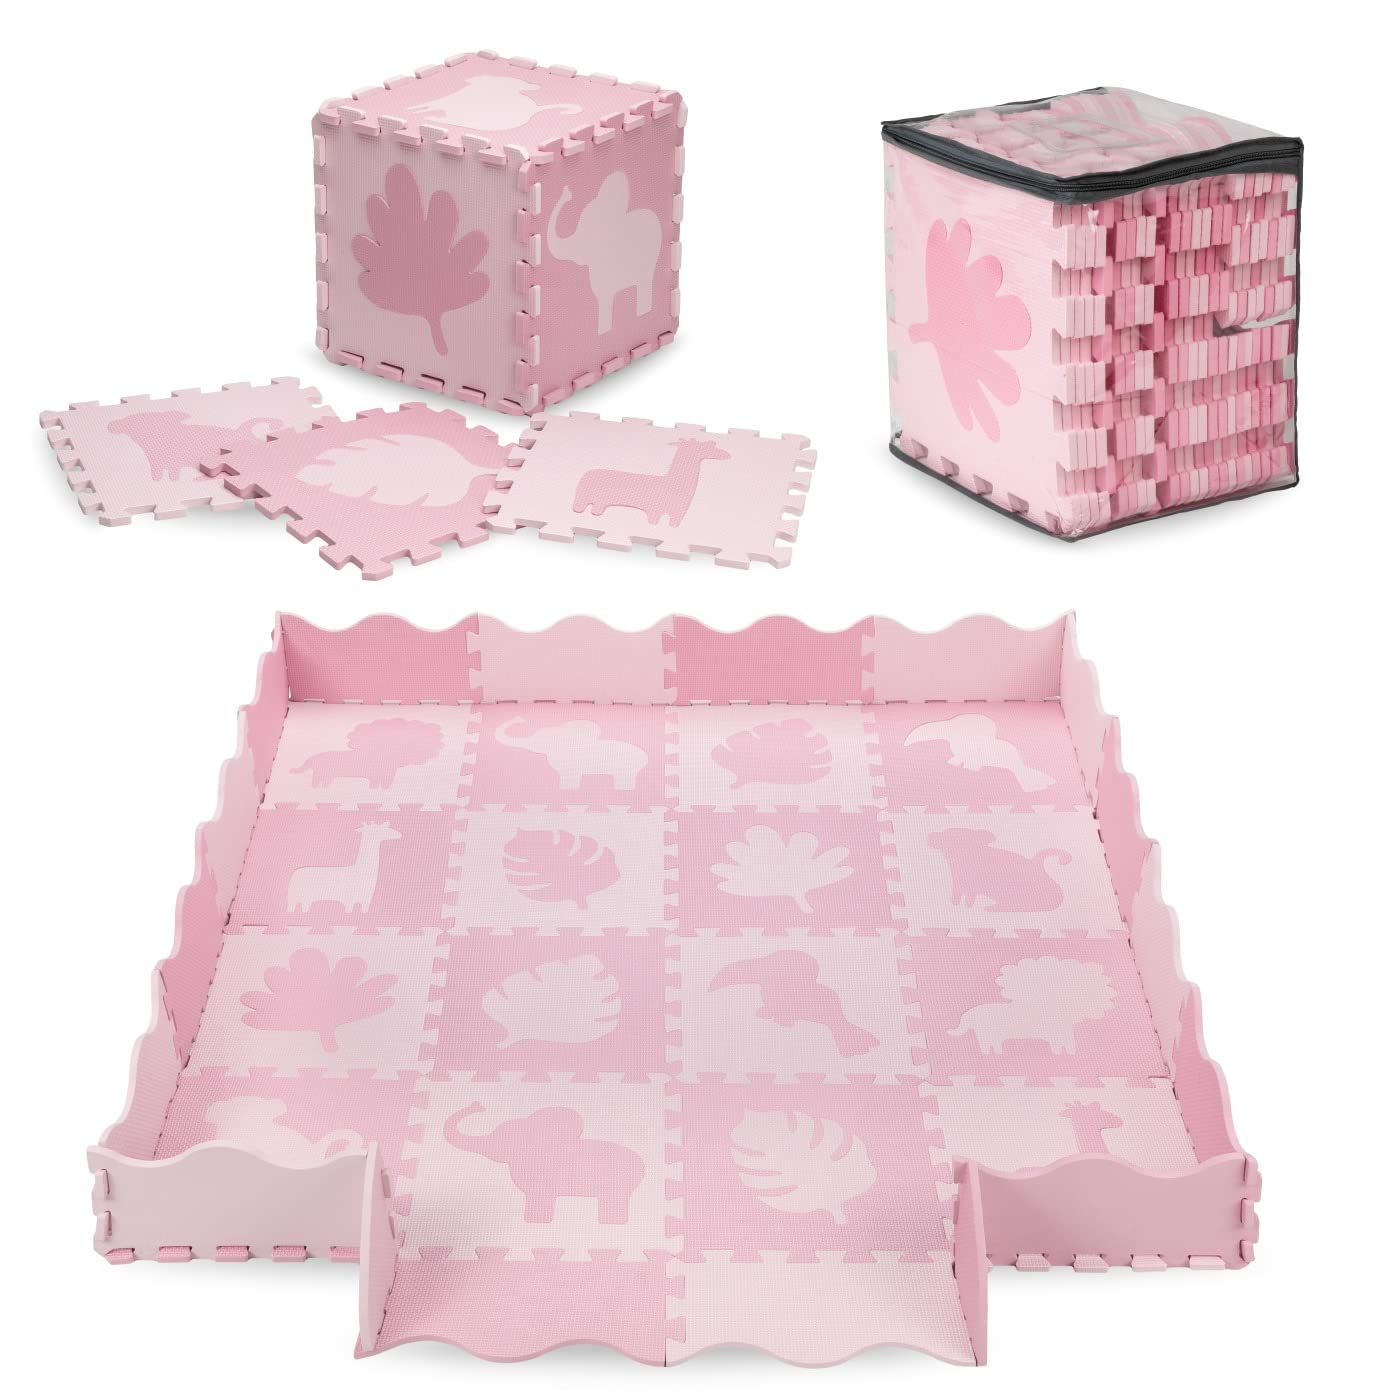 MoMi ZAWI Schaumstoff-Puzzle aus Eva-Schaumstoff, 16 Teile je 30 x 30 x 1 cm, ideal als Krabbelmatte (150x150 cm), Laufstall (120x 120x15 cm), Spielunterlage, Spielzeugaufbewahrung, rosa